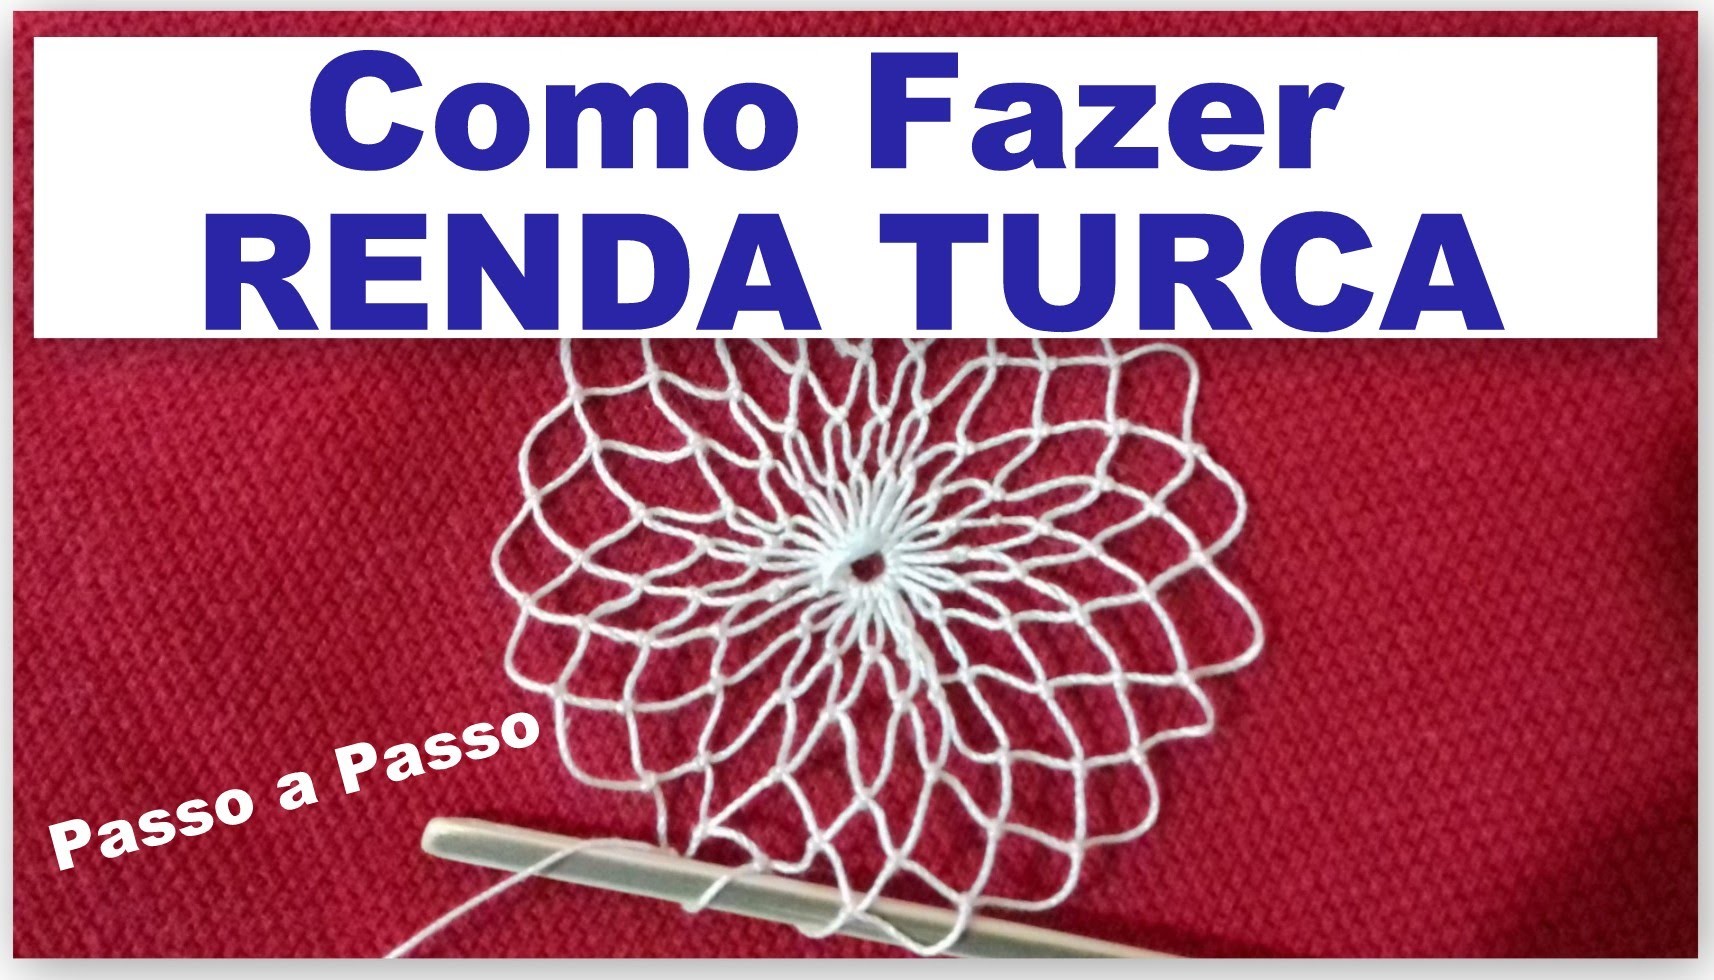 RENDA TURCA #FAZENDO RENDA PASSO A PASSO - AULA 1